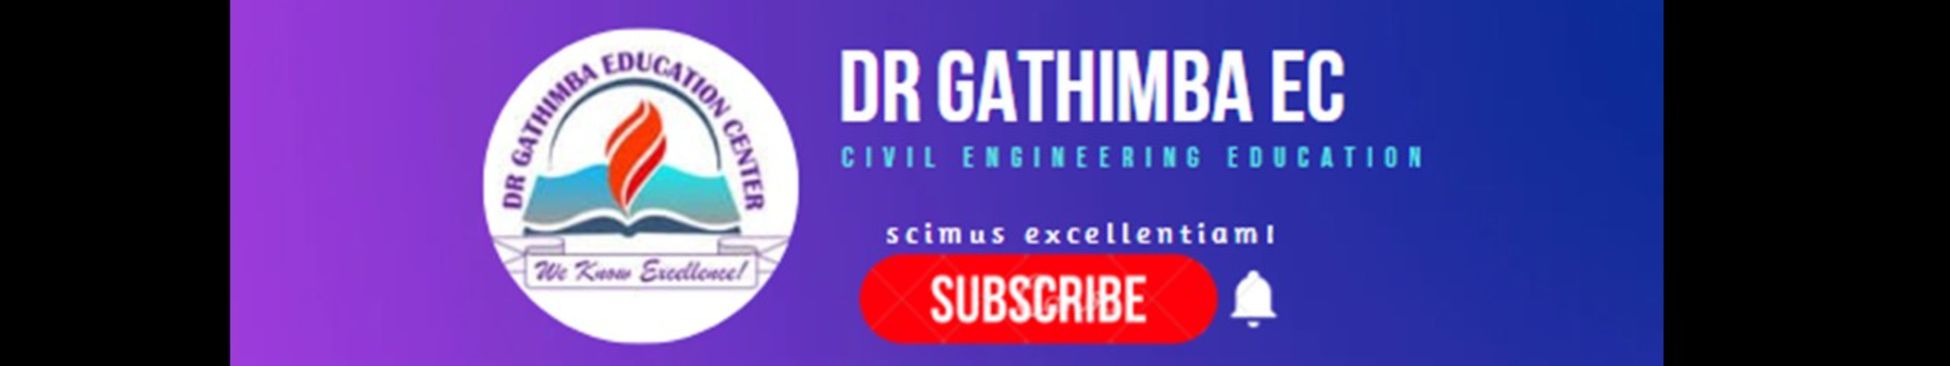 Dr Gathimba